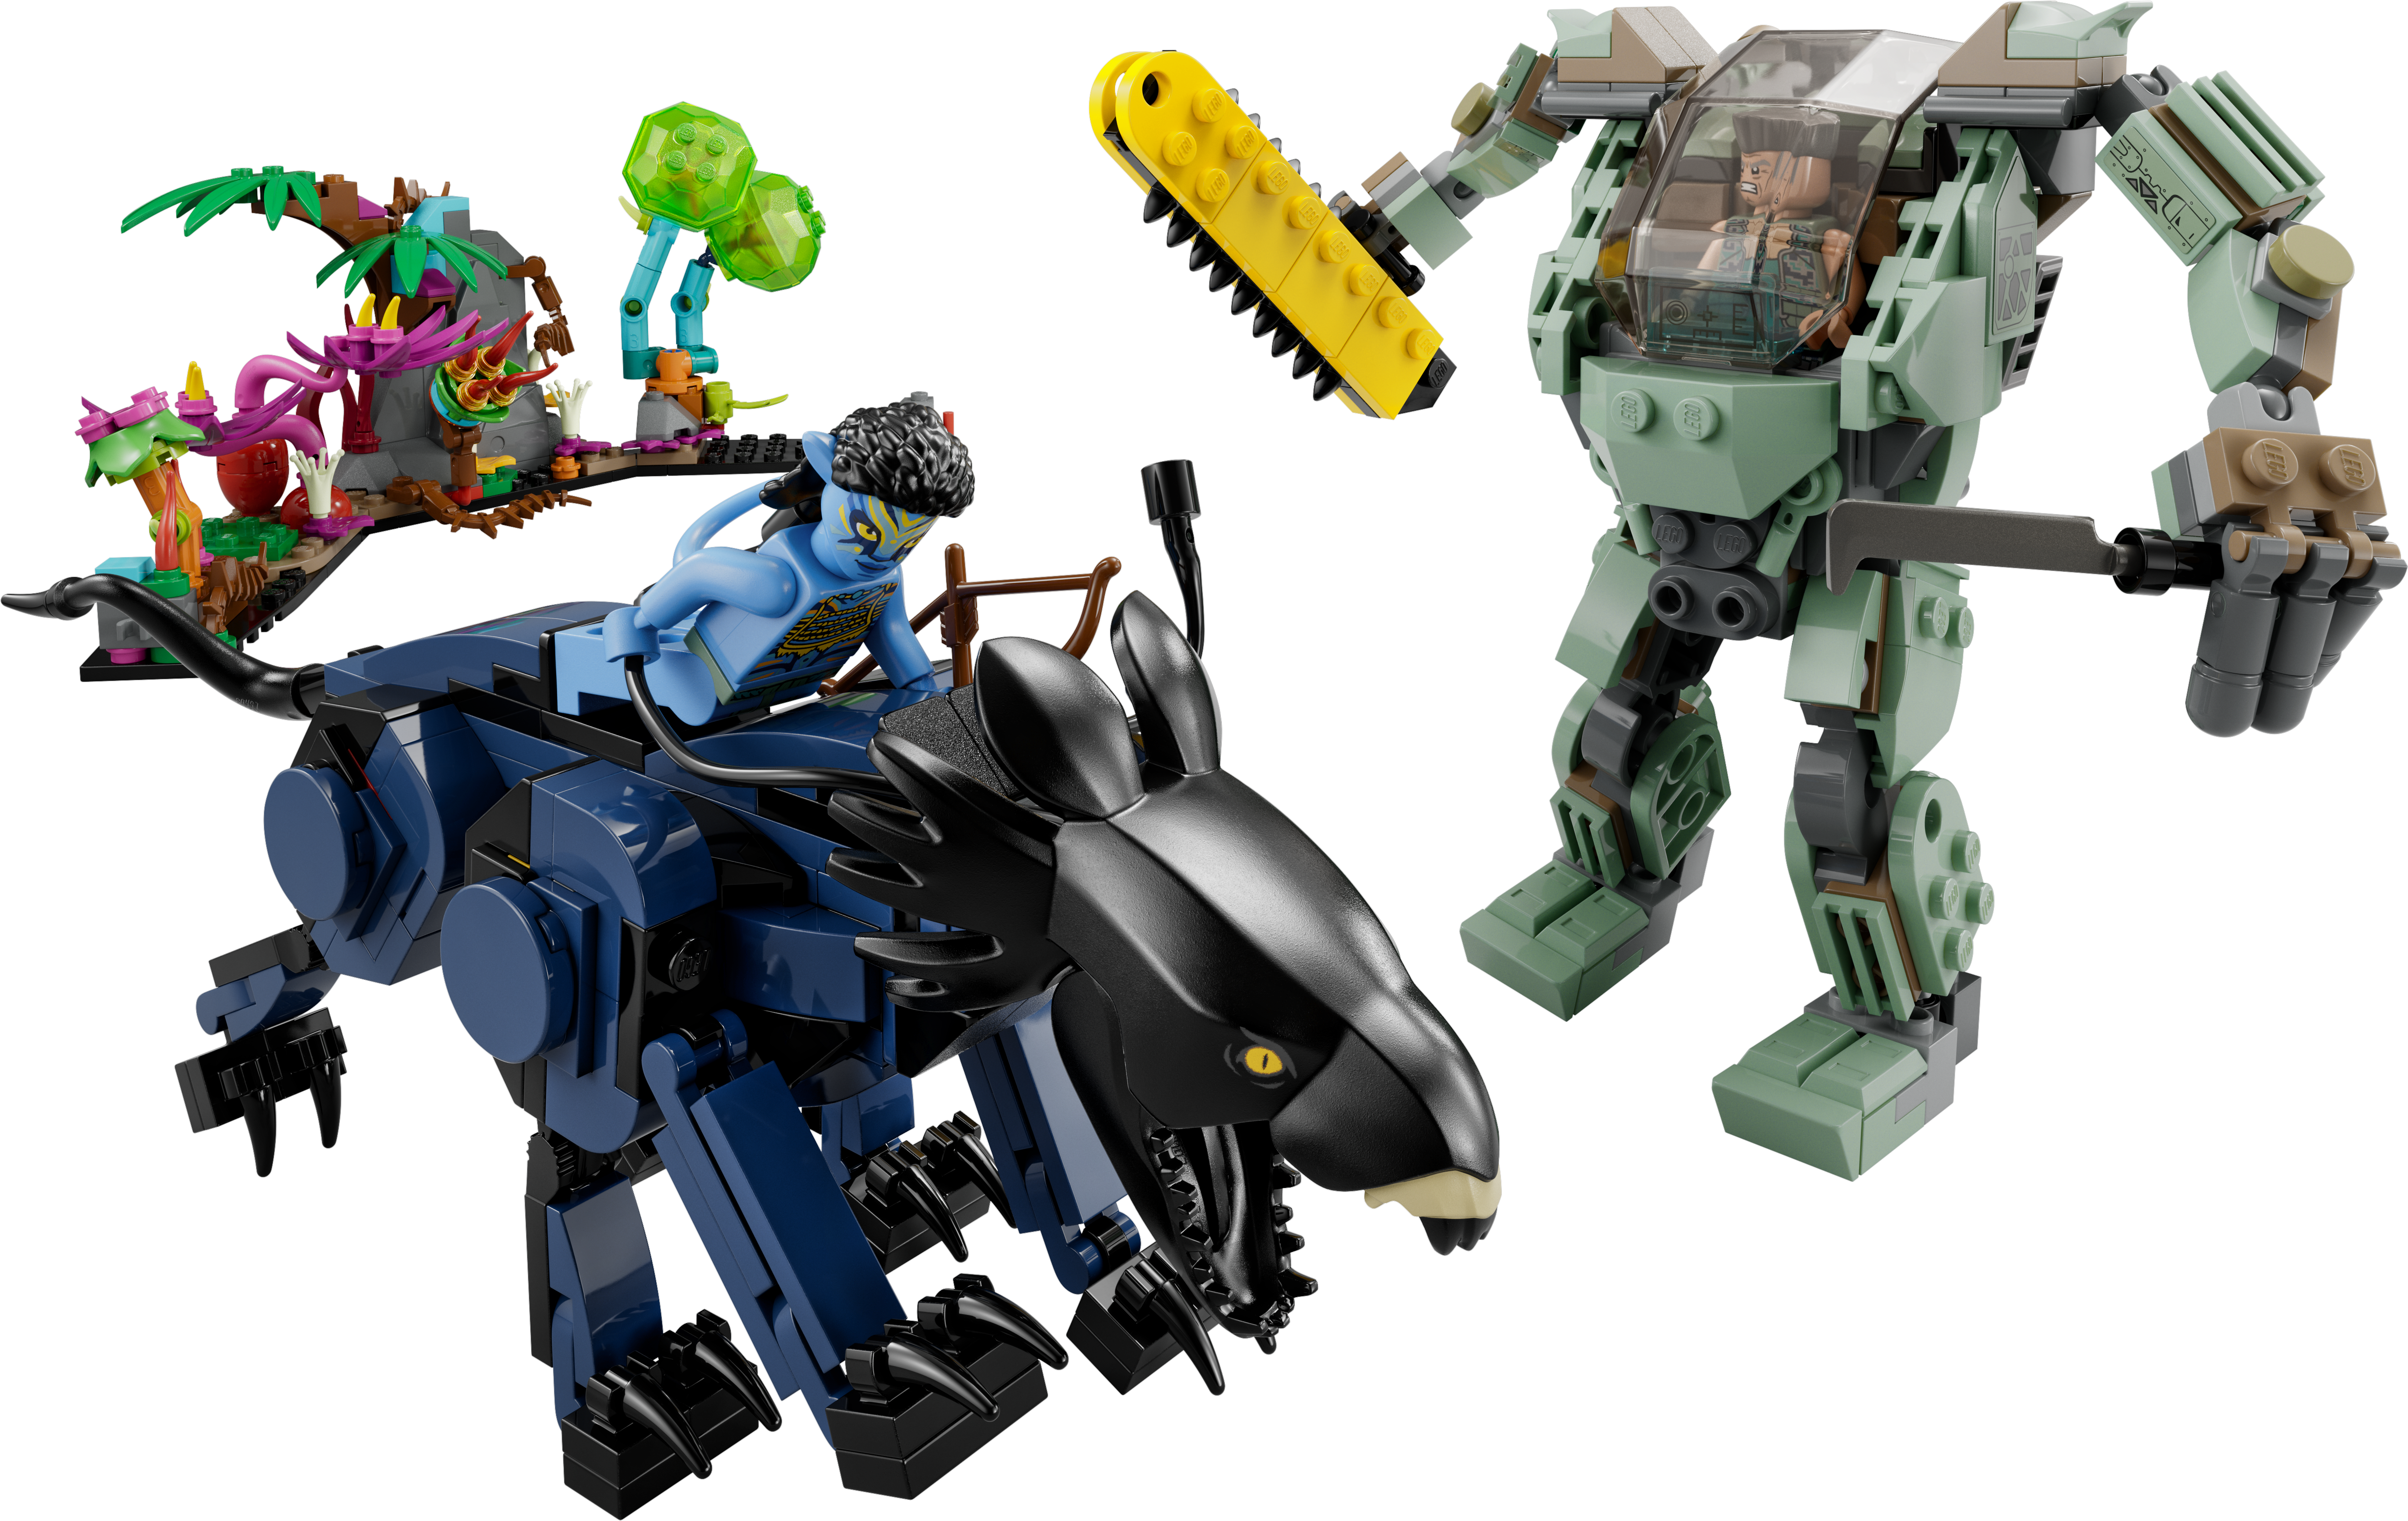 75571 - LEGO® Avatar - Neytiri et le Thanator vs. Quaritch LEGO : King  Jouet, Lego, briques et blocs LEGO - Jeux de construction